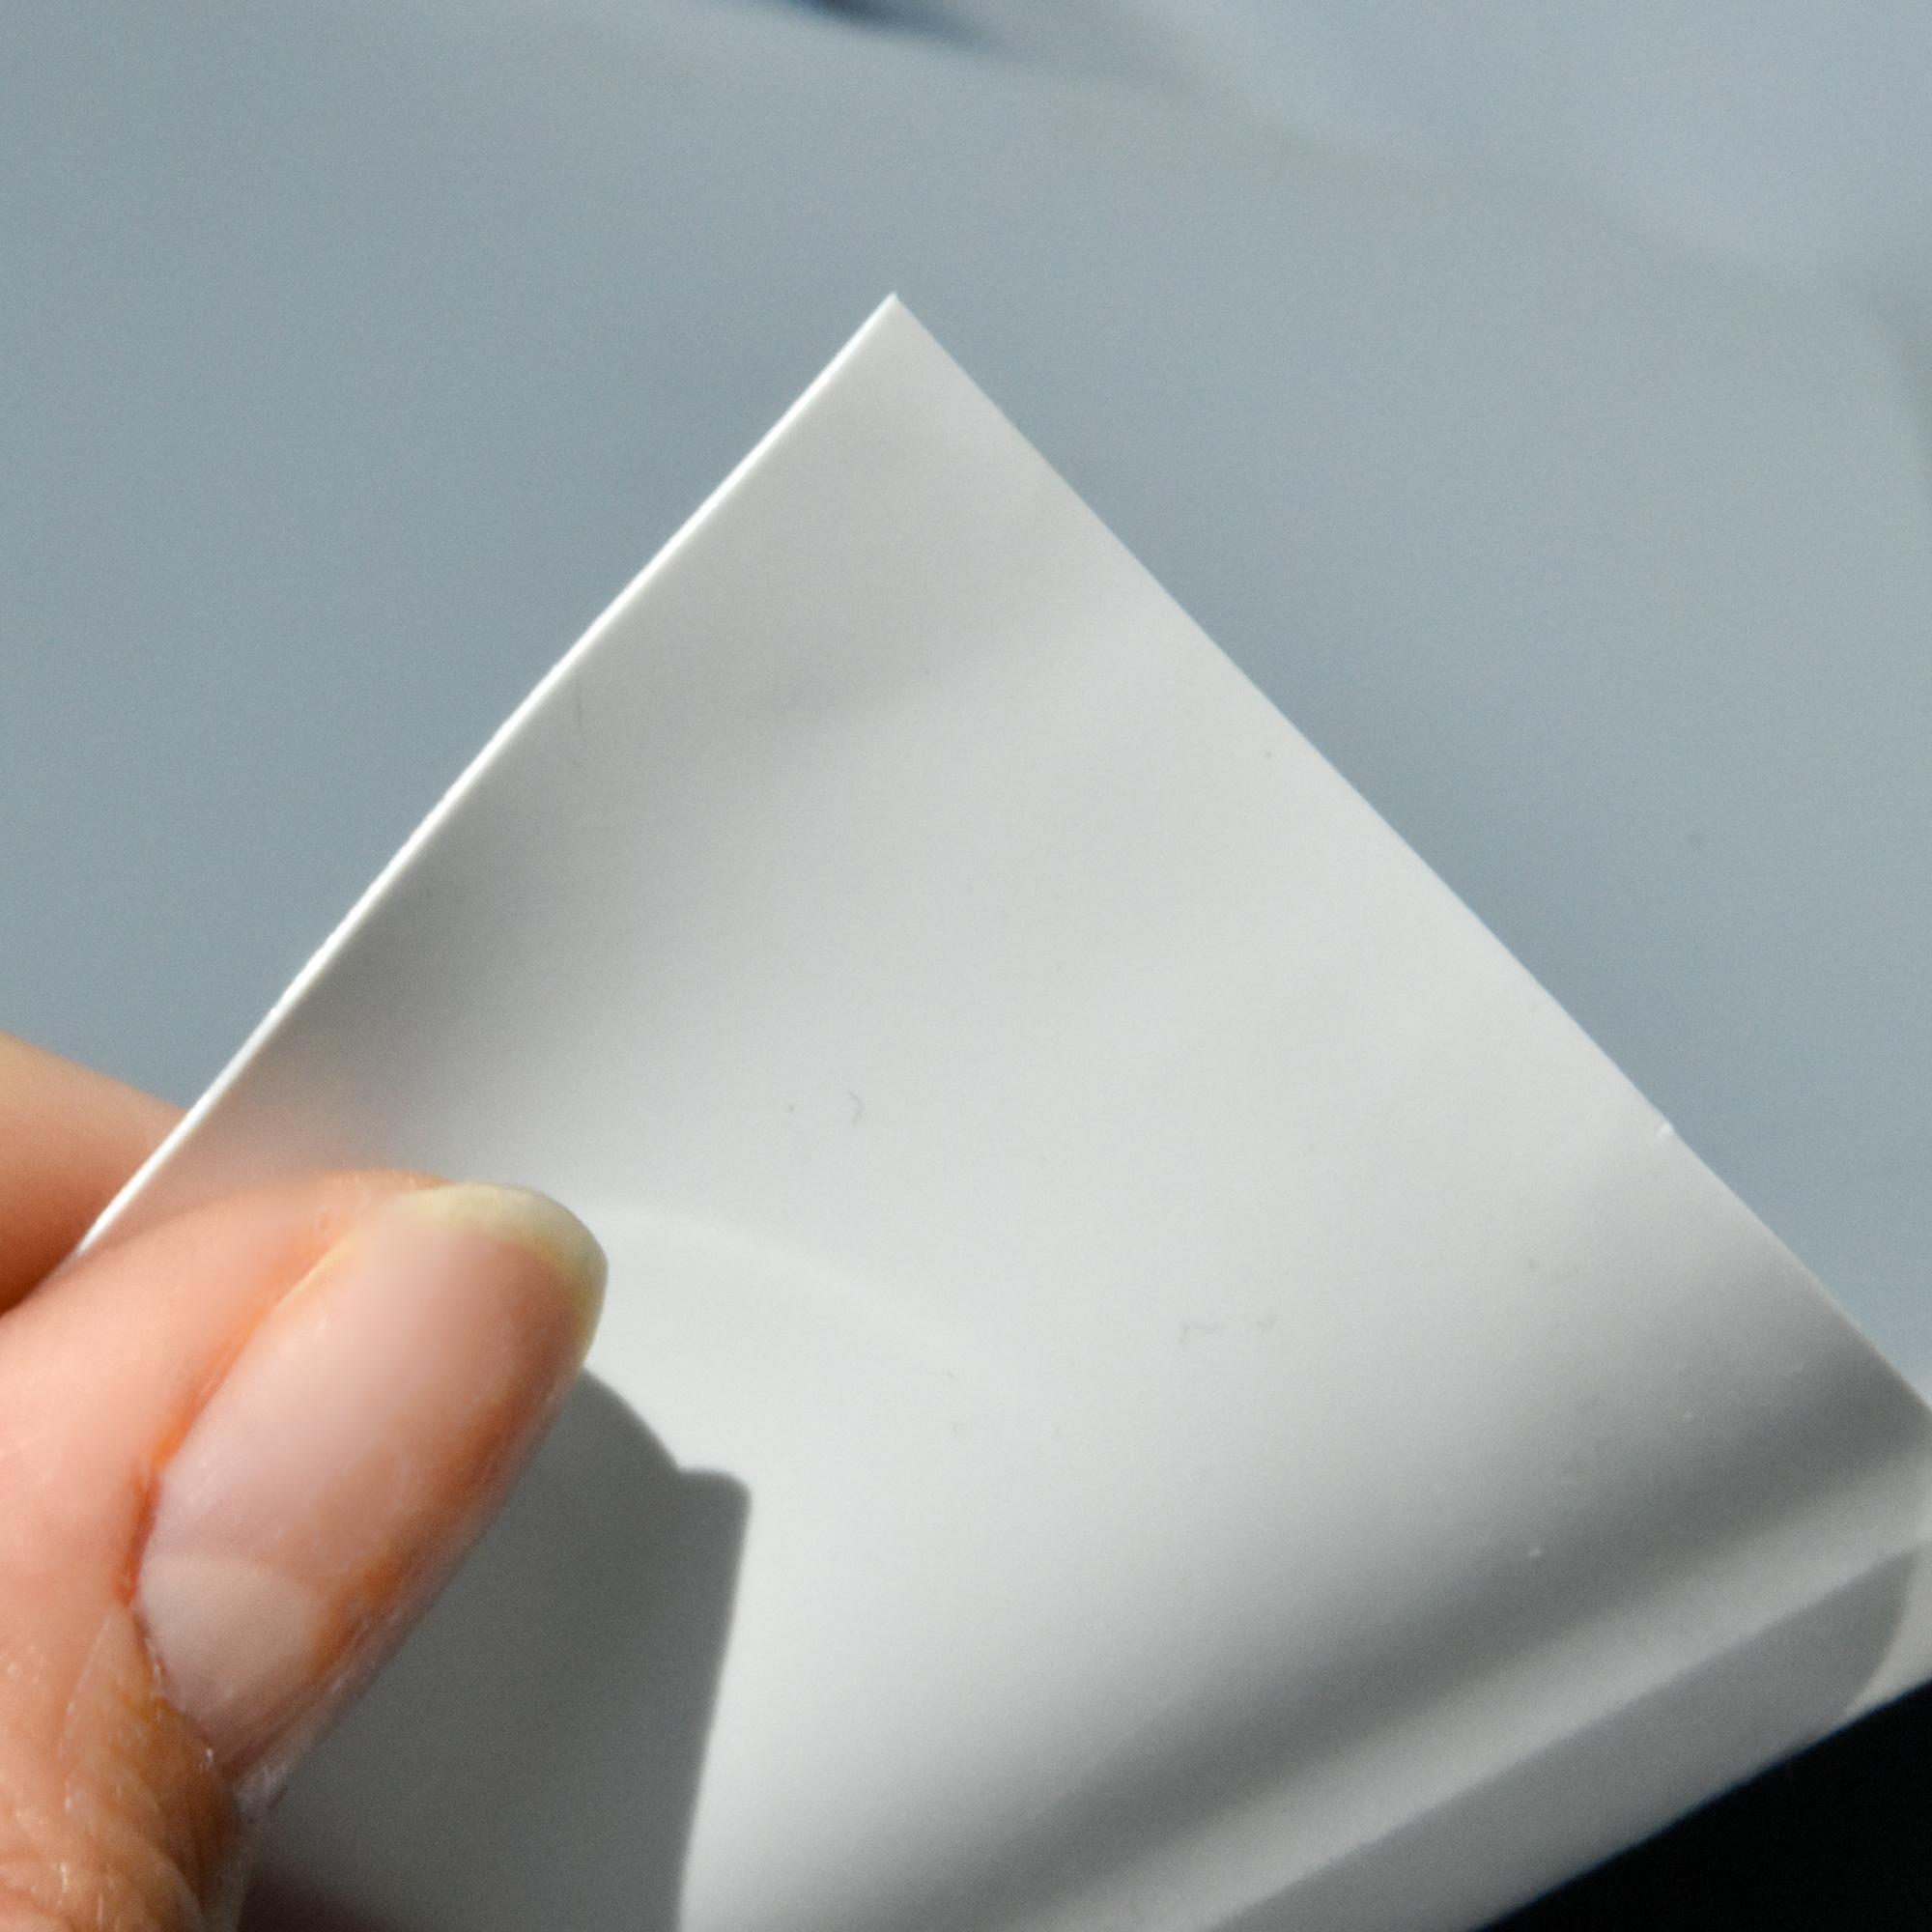 Film plastico tessuto in serra per protezione UV agricola